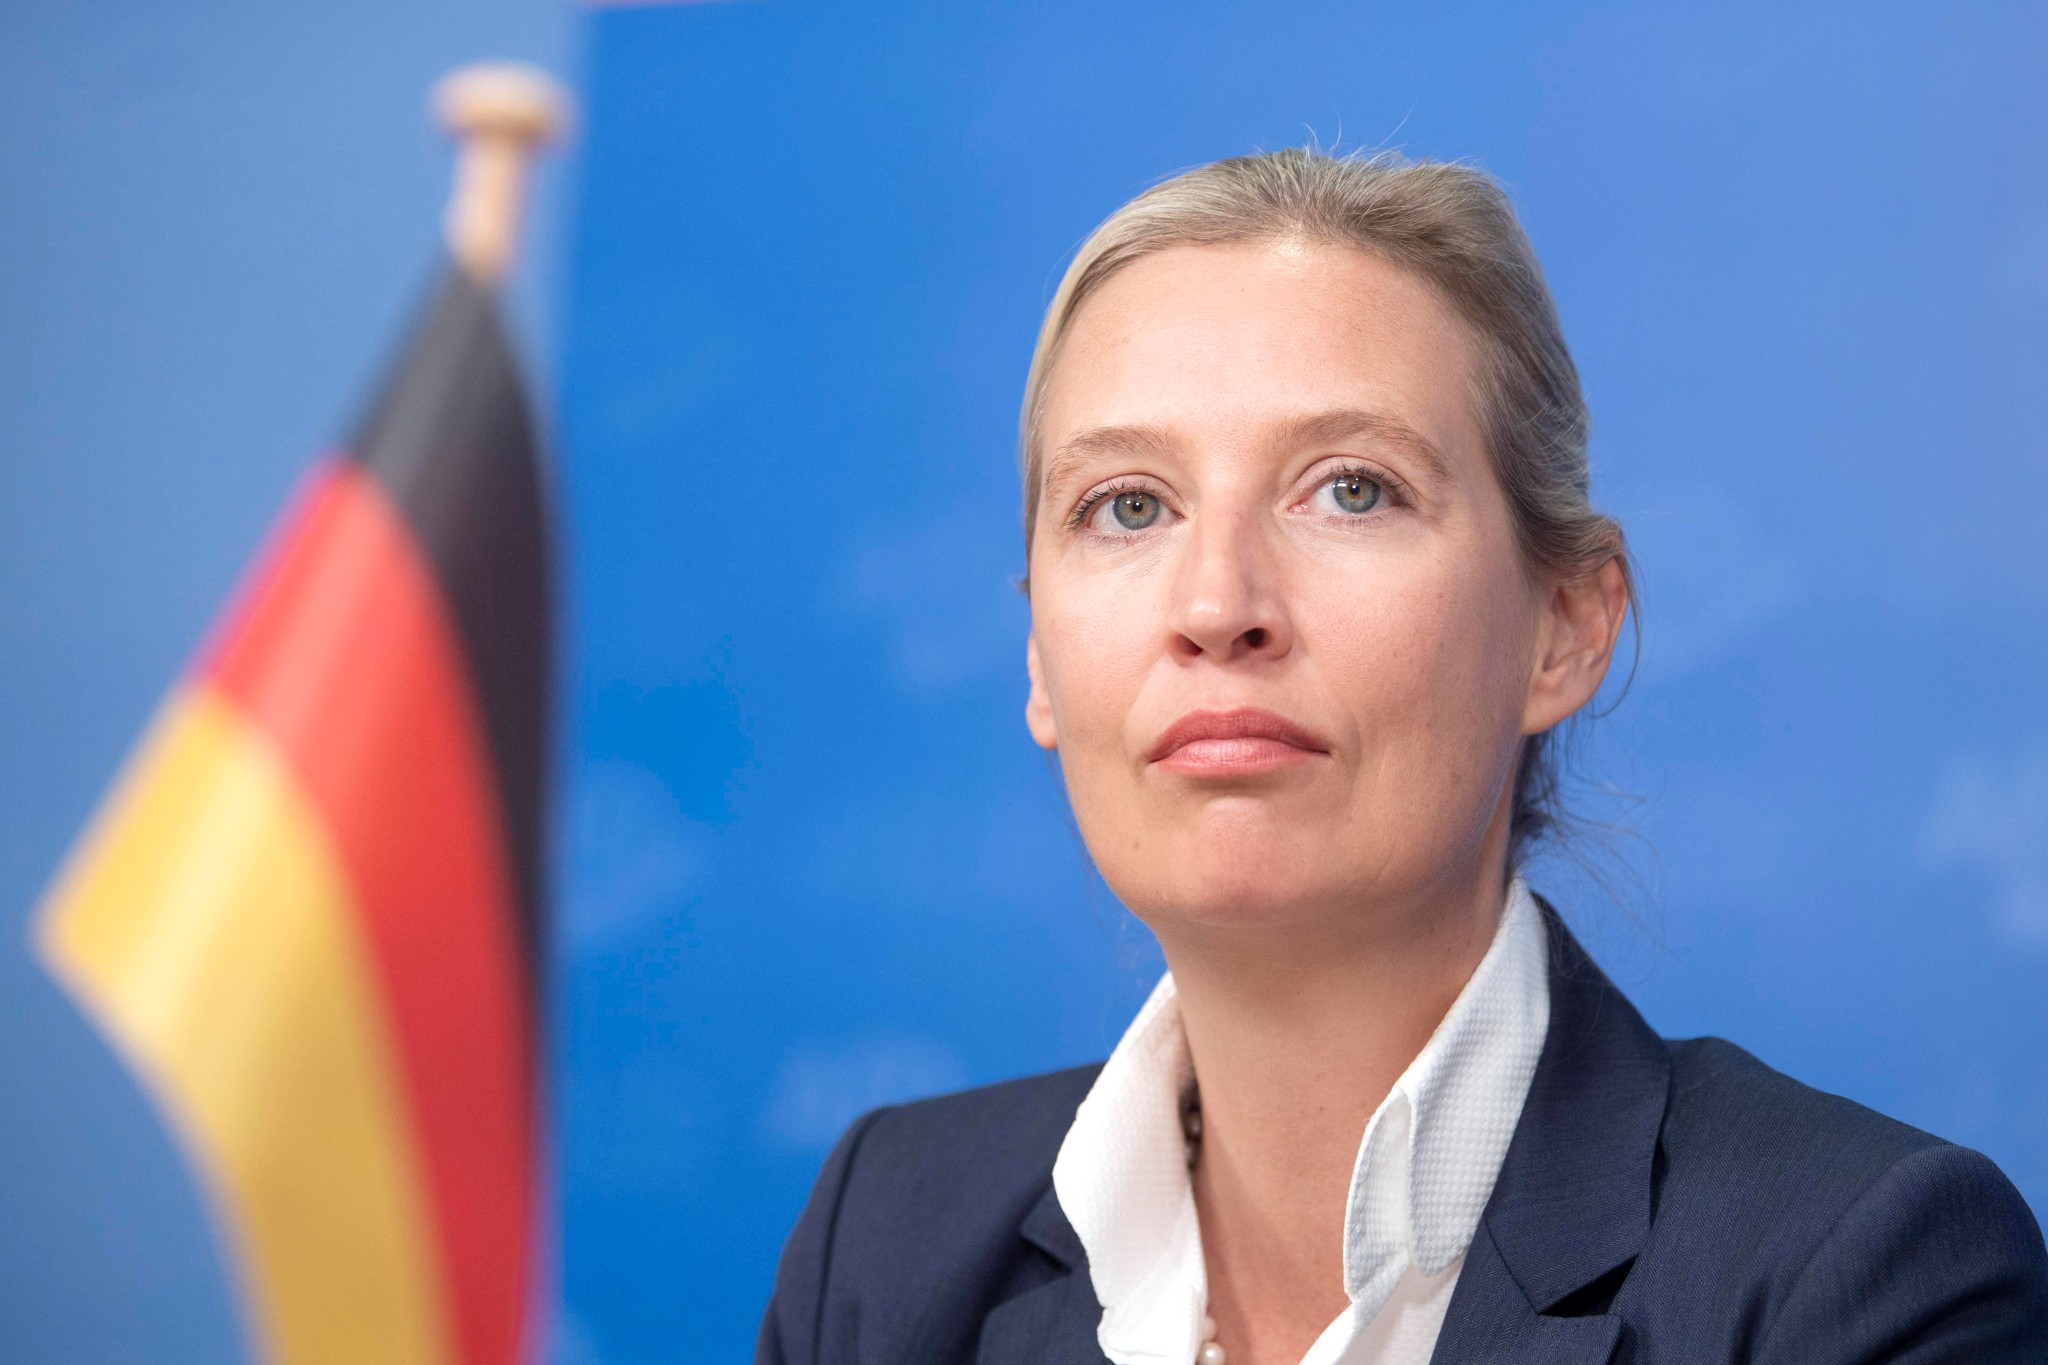 dexit: wie ein eu-austritt deutschlands ablaufen würde